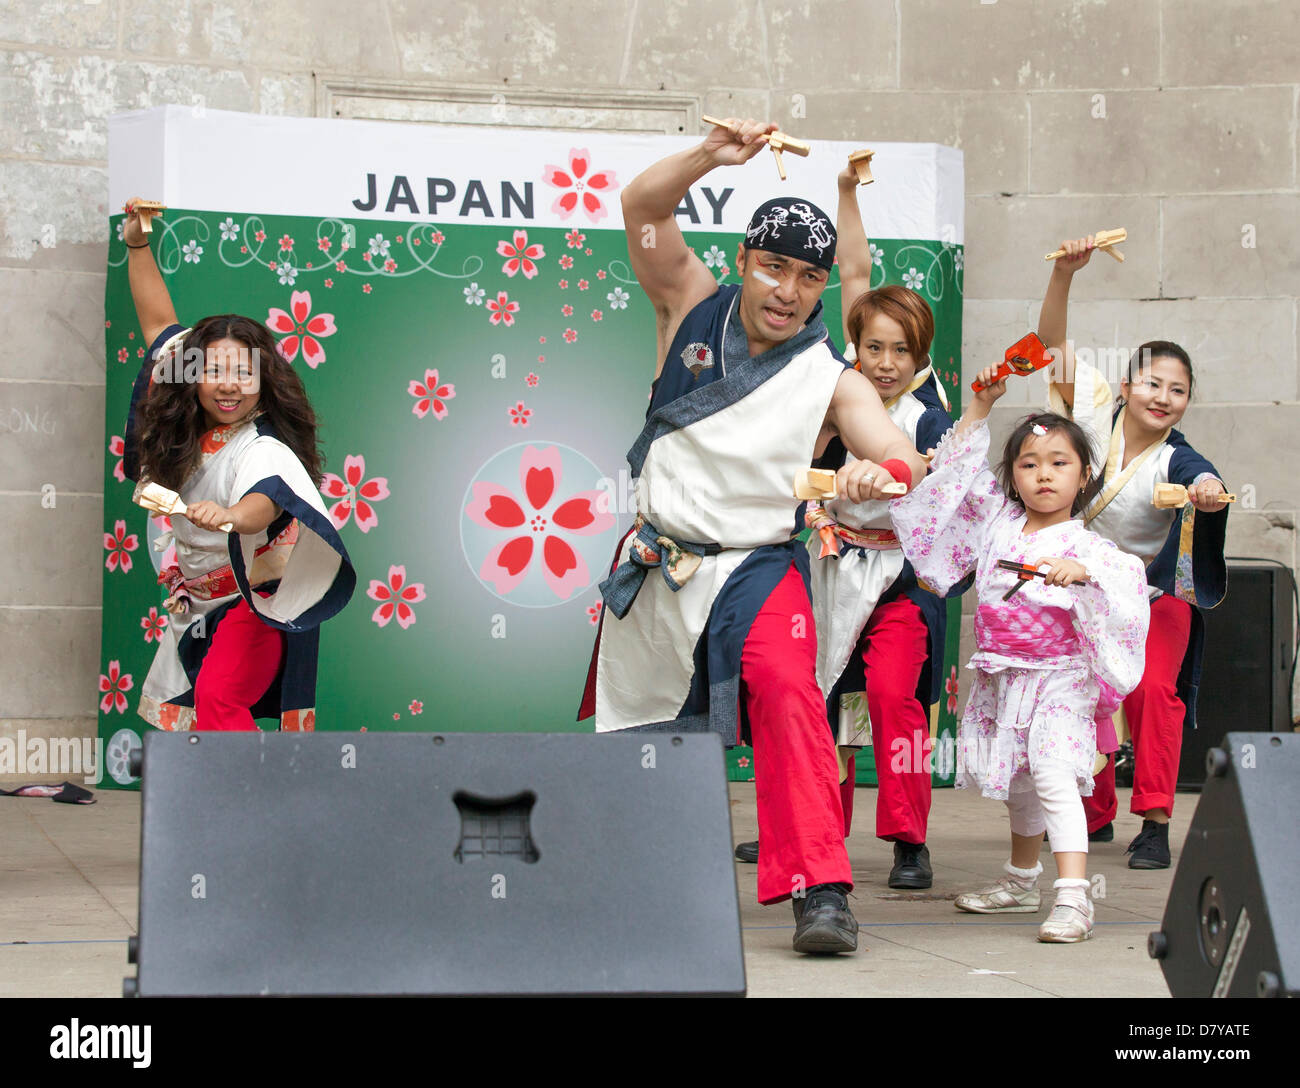 NEW YORK, USA - MAY 12: Yosakoi Dance by Yosakoi Dance Project 10tecomai perform at Japan Day at Central Park on May 12, 2013 Stock Photo